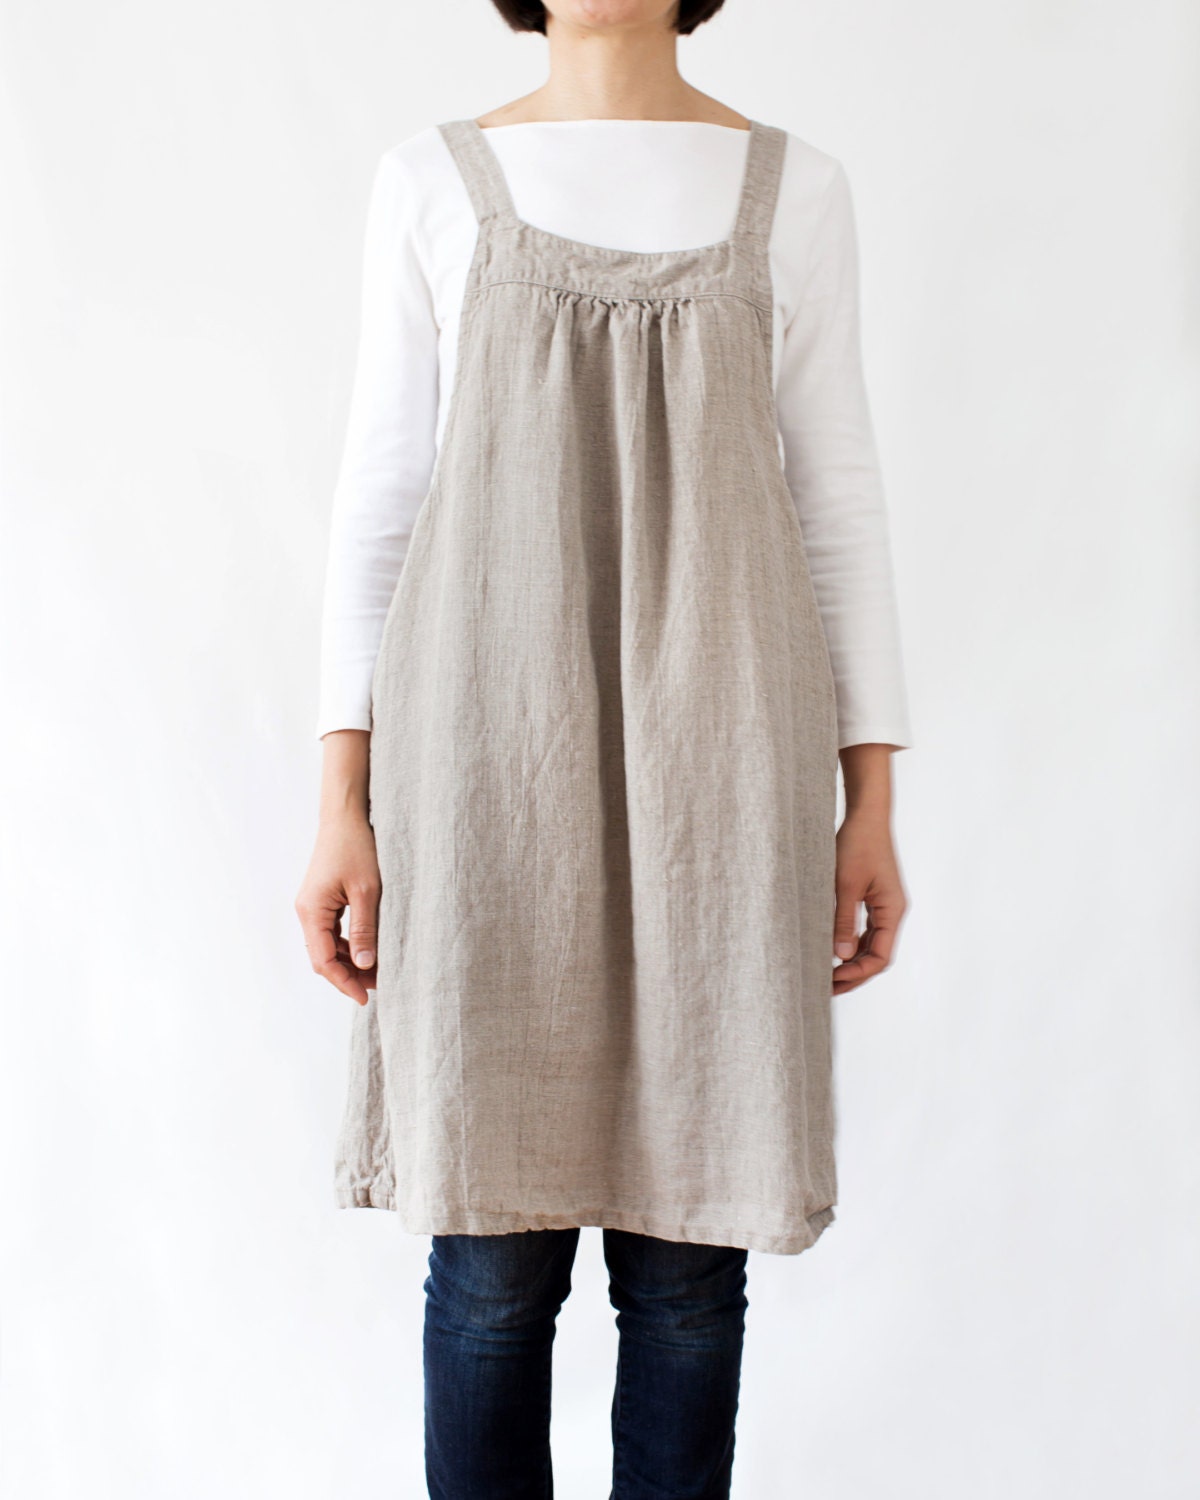 Linen jumper dress/ apron dress for women in natural linen